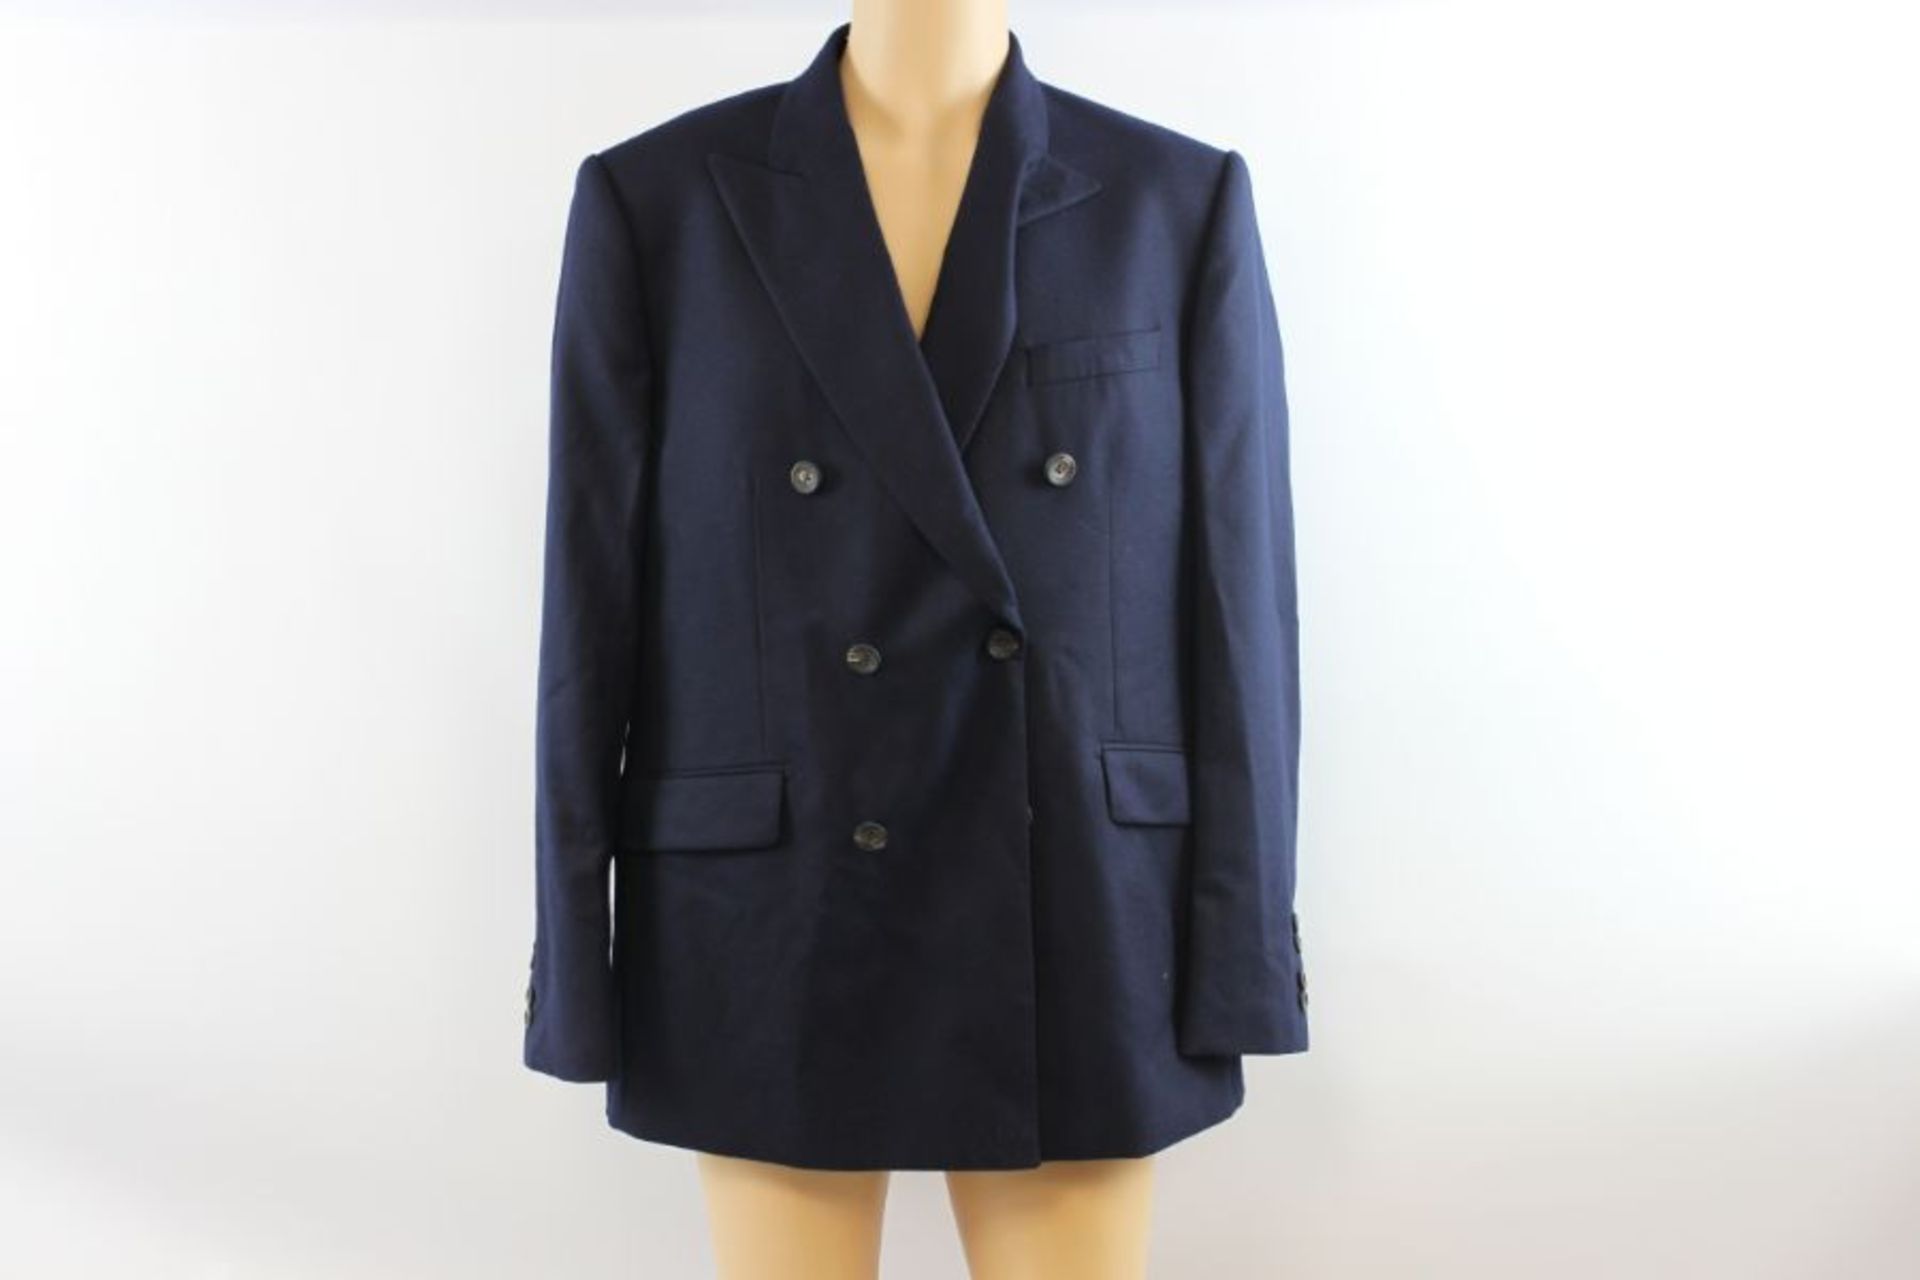 Hackett London Men's SR Plain Flannel Suit, Navy, Size 44